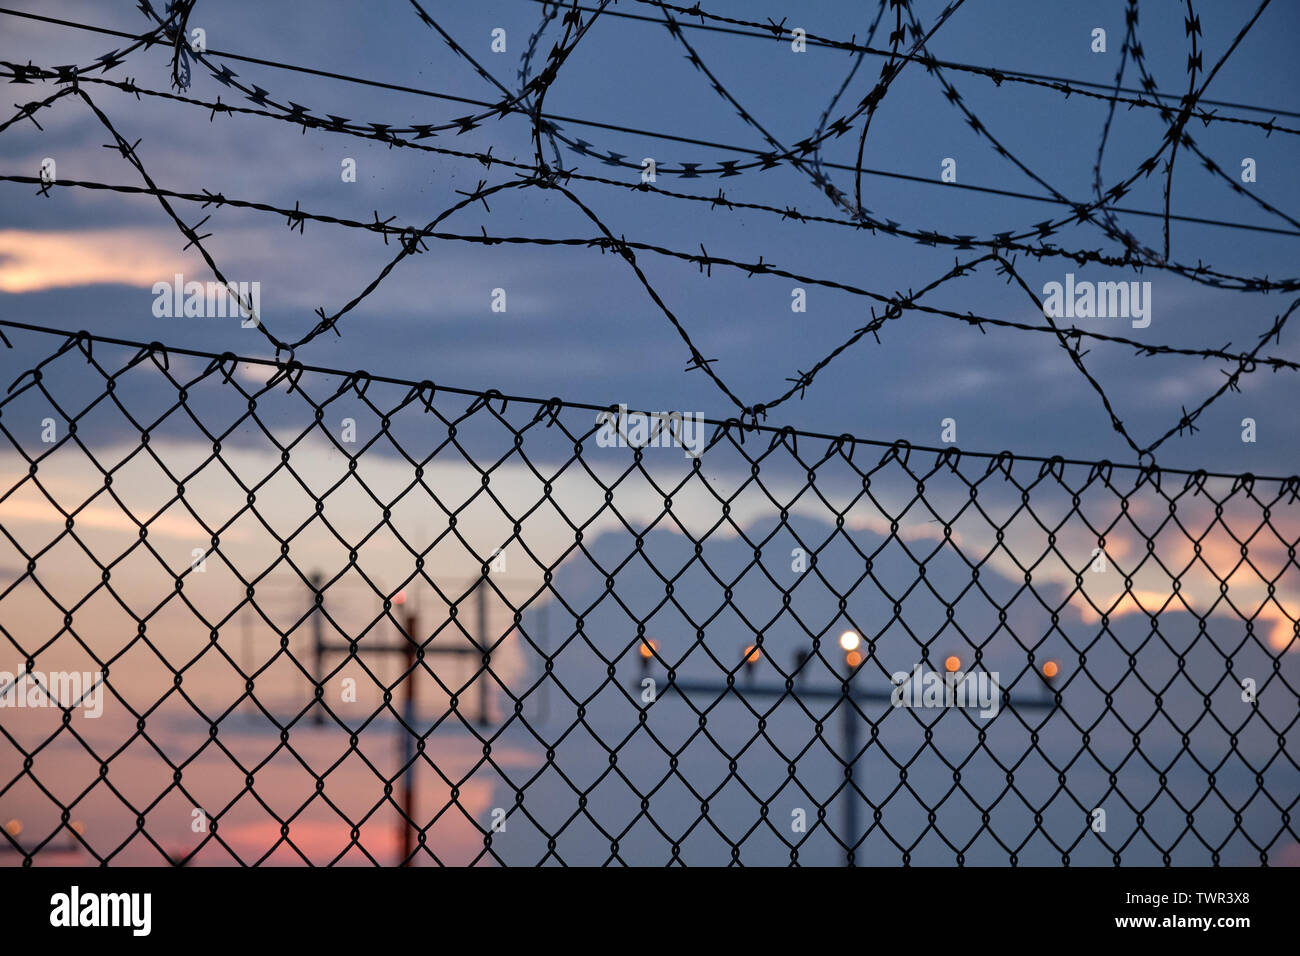 Details einer Kette Link Zaun mit Stacheldraht und vor einem Sonnenuntergang am Flughafen Stockfoto